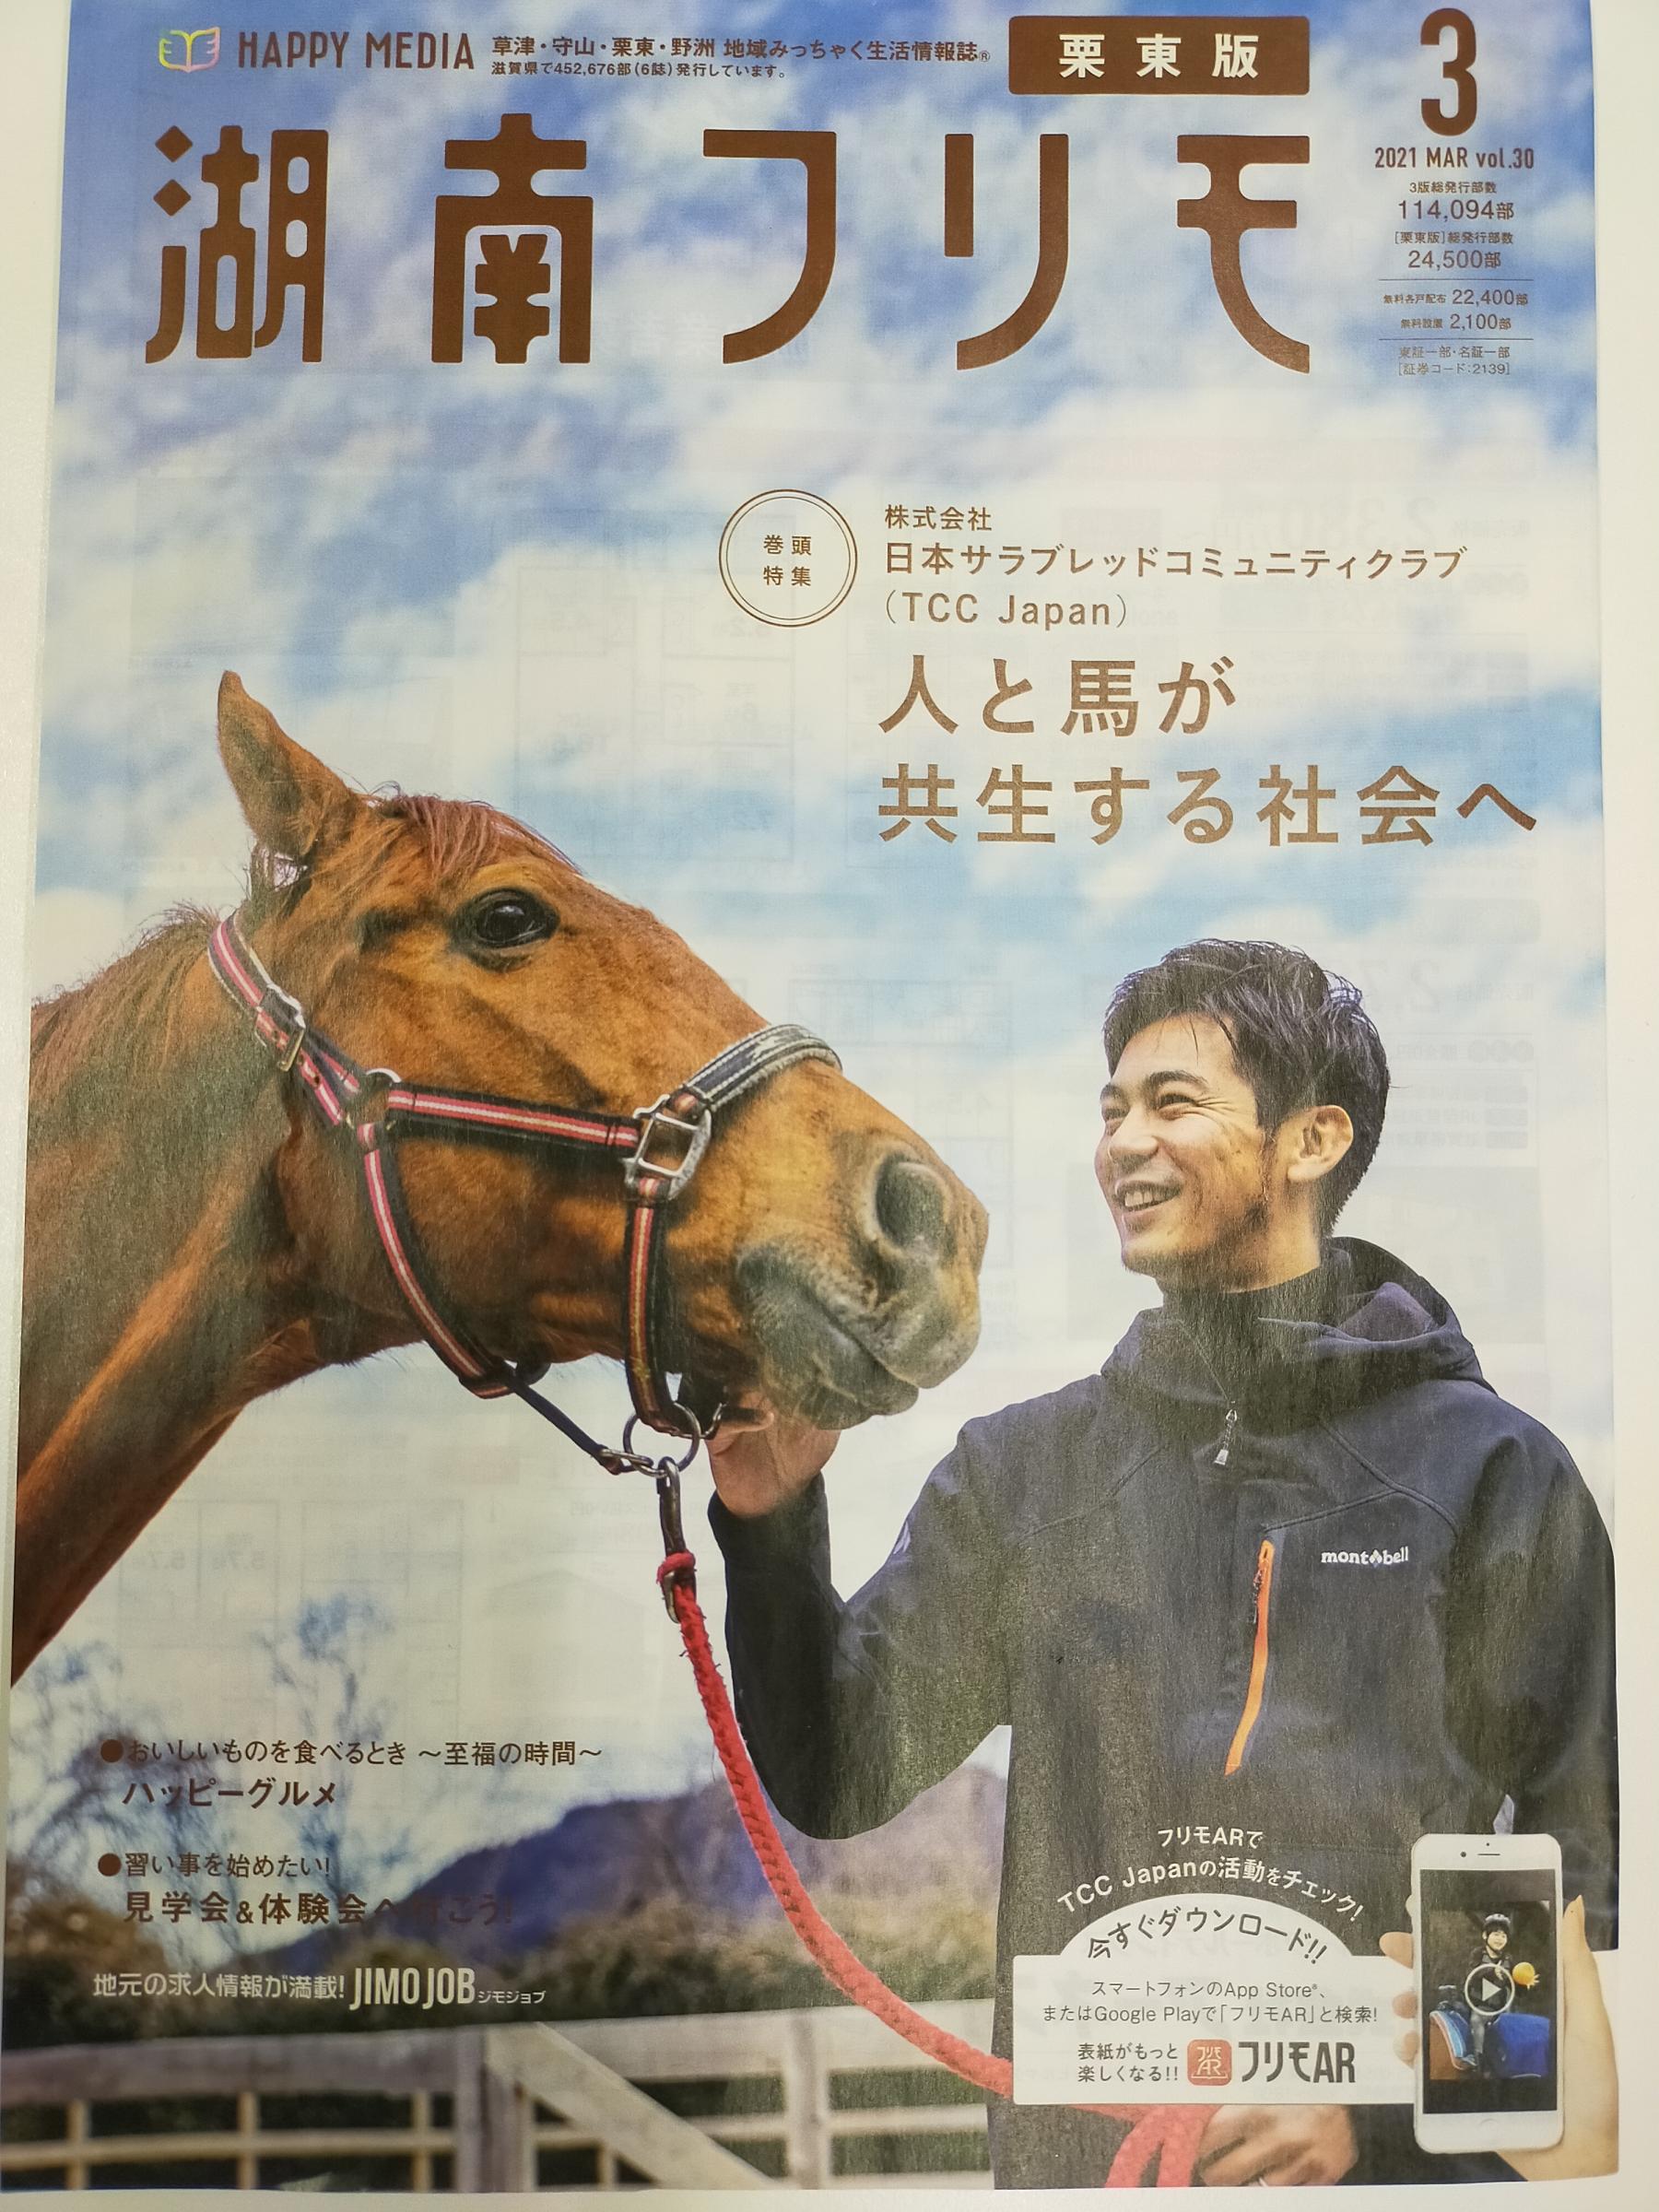 【掲載】湖南フリモ 2021年3月号(vol30)巻頭特集  ~日本サラブレッドコミュニティクラブ(TCC Japan)人と馬が共生する社会へ